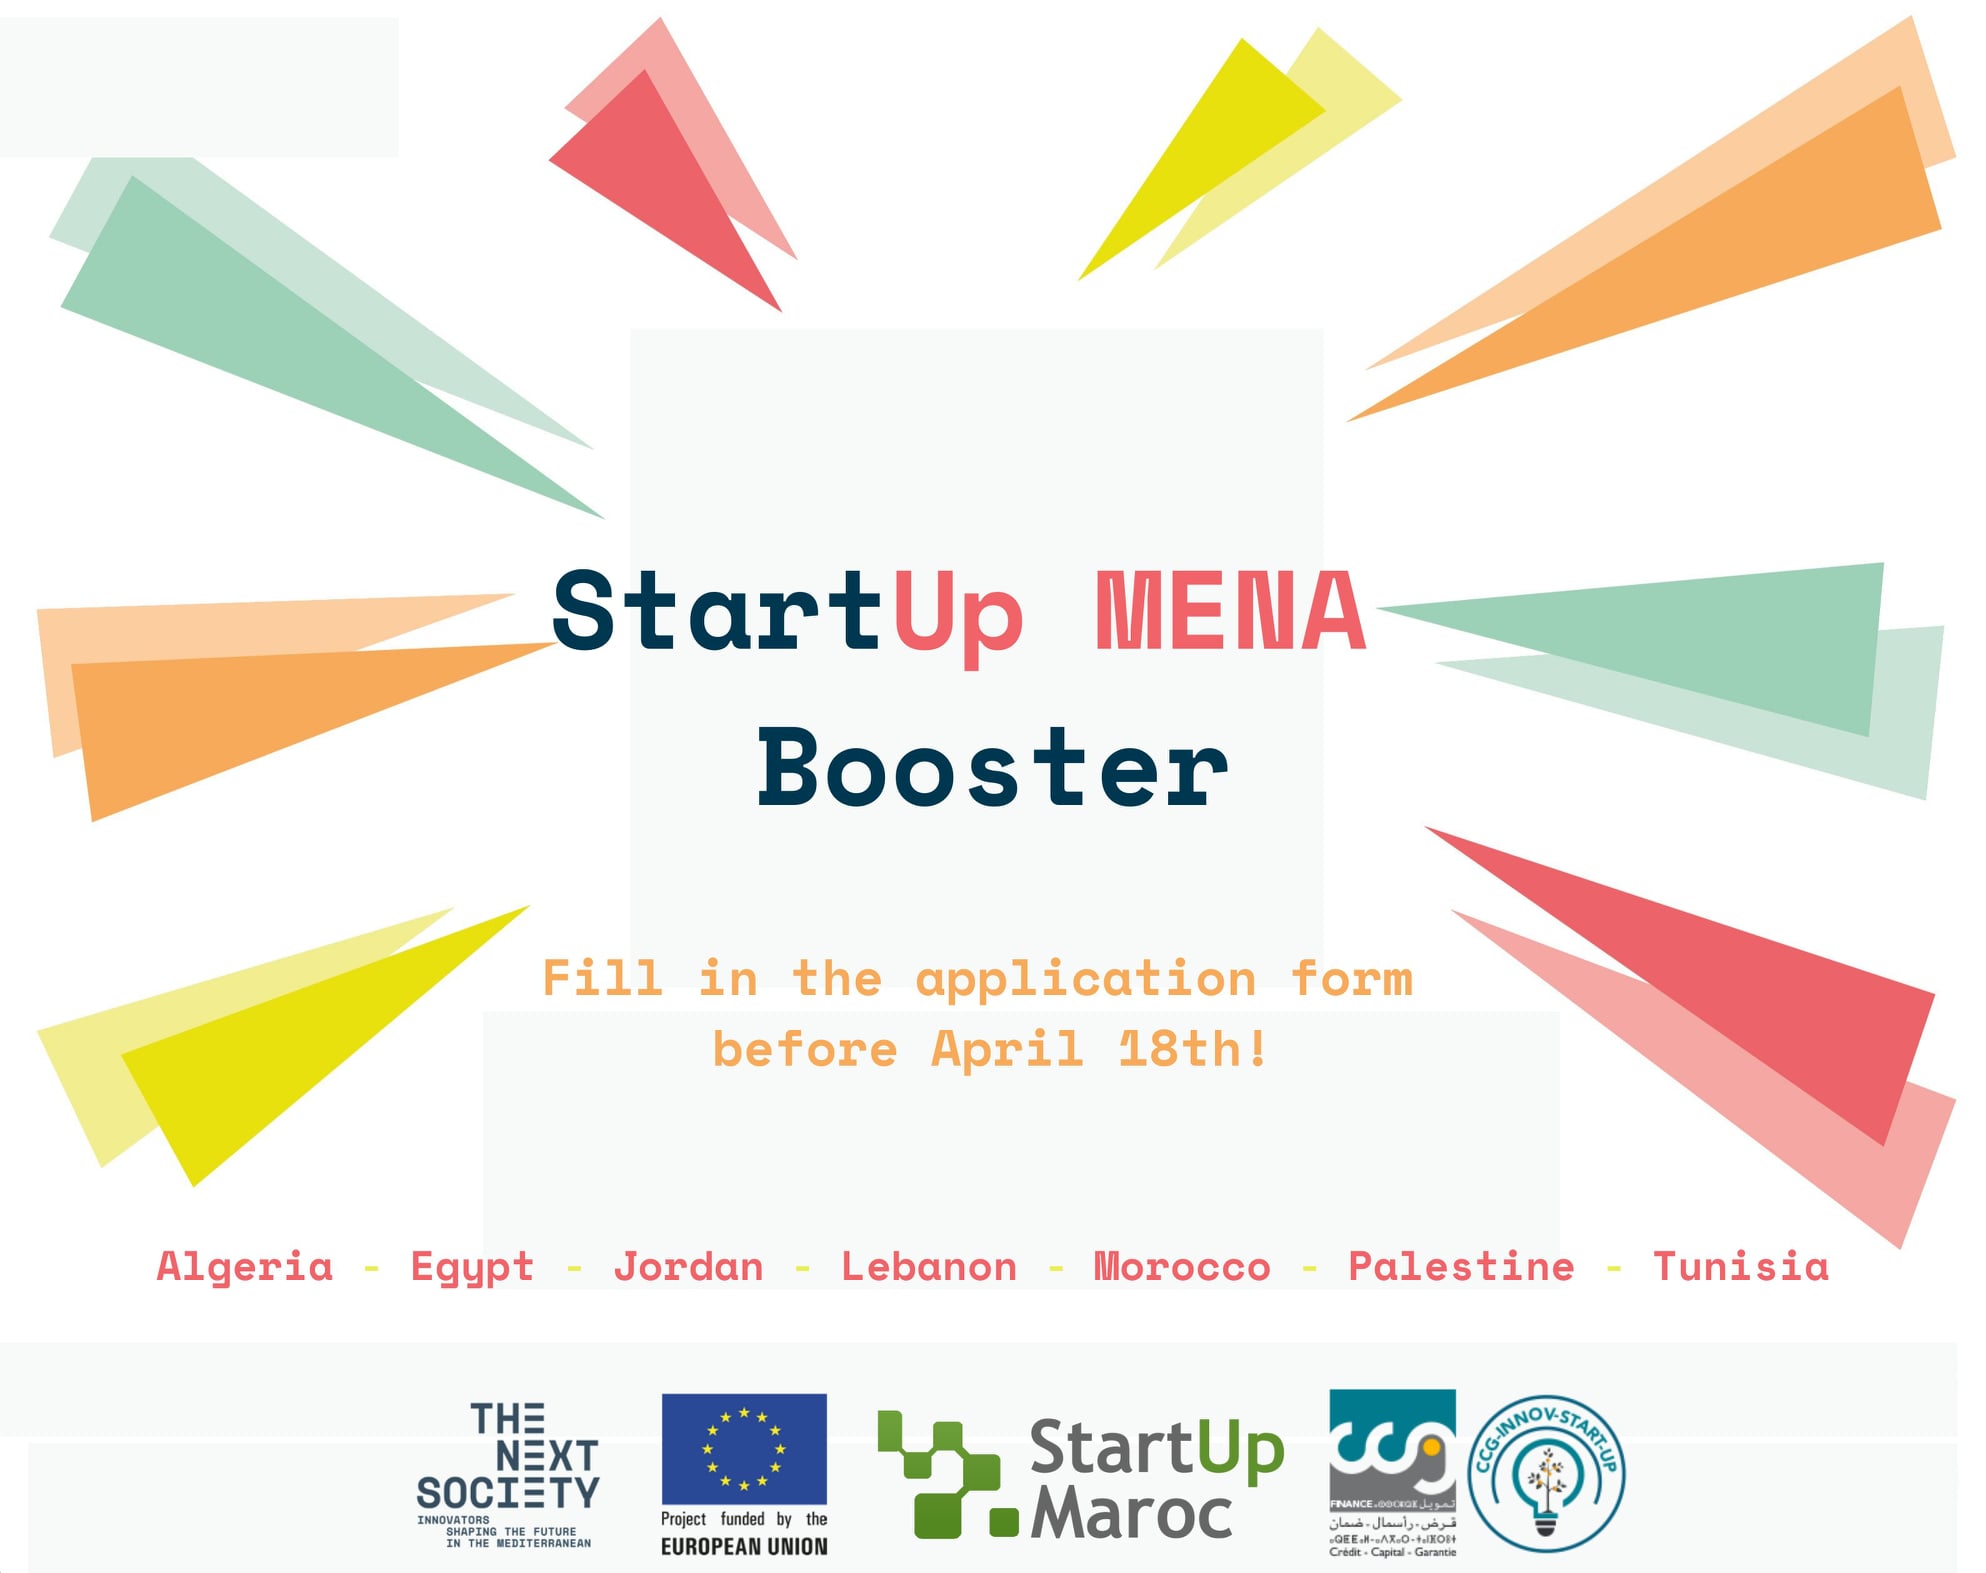 THE NEXT SOCIETY lance un appel à candidatures pour rejoindre le StartUp MENA Booster.